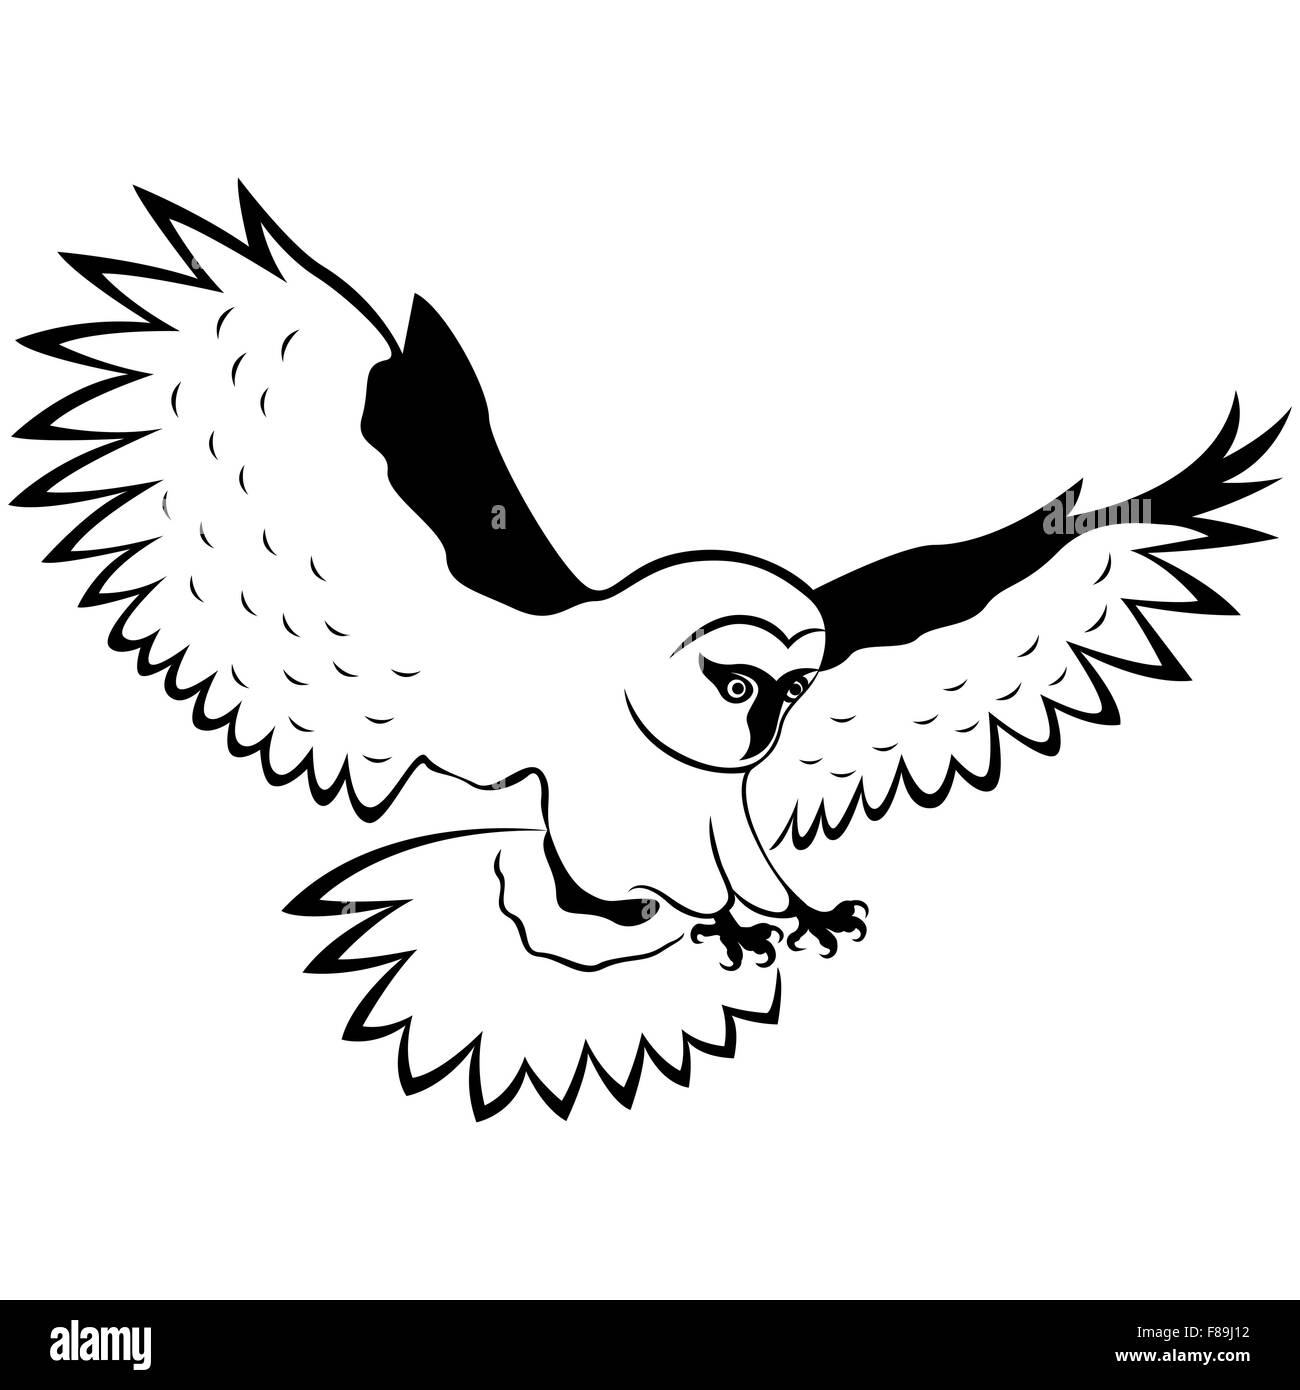 Divertente gufo in volo con ali distesa ampia e artigli affilati, mano disegno vettoriale di delineare isolato su uno sfondo bianco Illustrazione Vettoriale